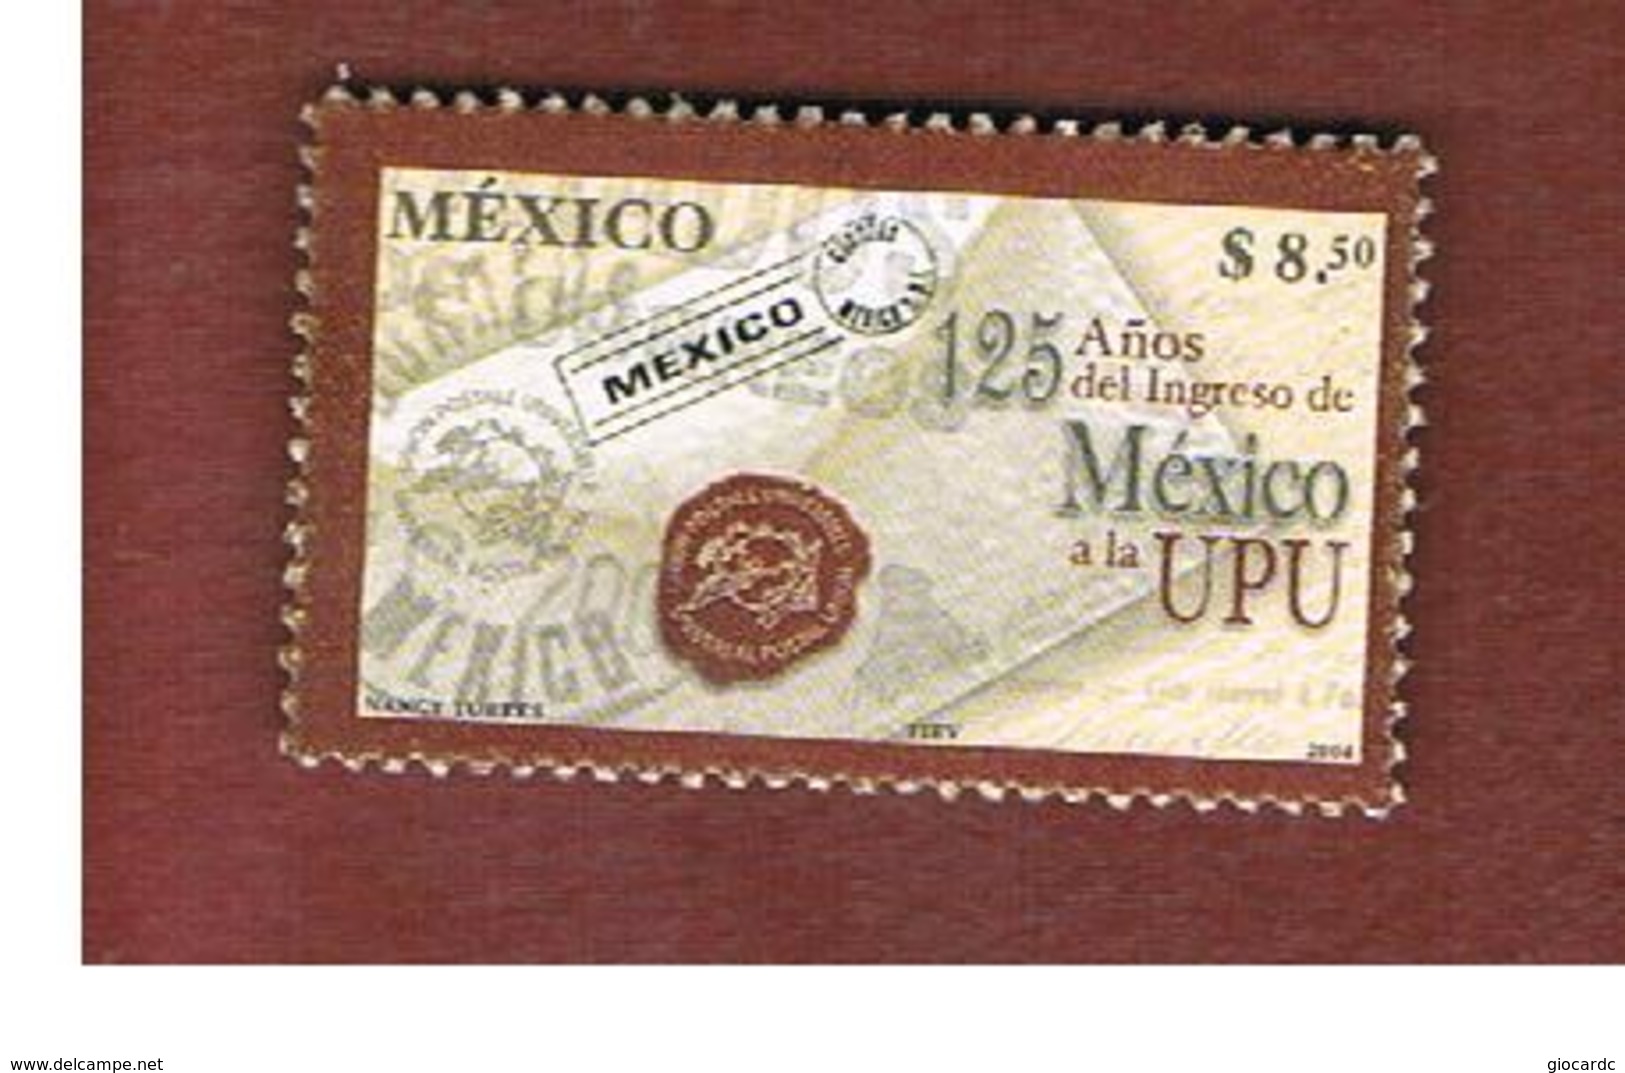 MESSICO (MEXICO) -  MI 3093 -   2004    125^ ANNIV. MEXICO INTO  U.P.U.            -  USED° - Messico